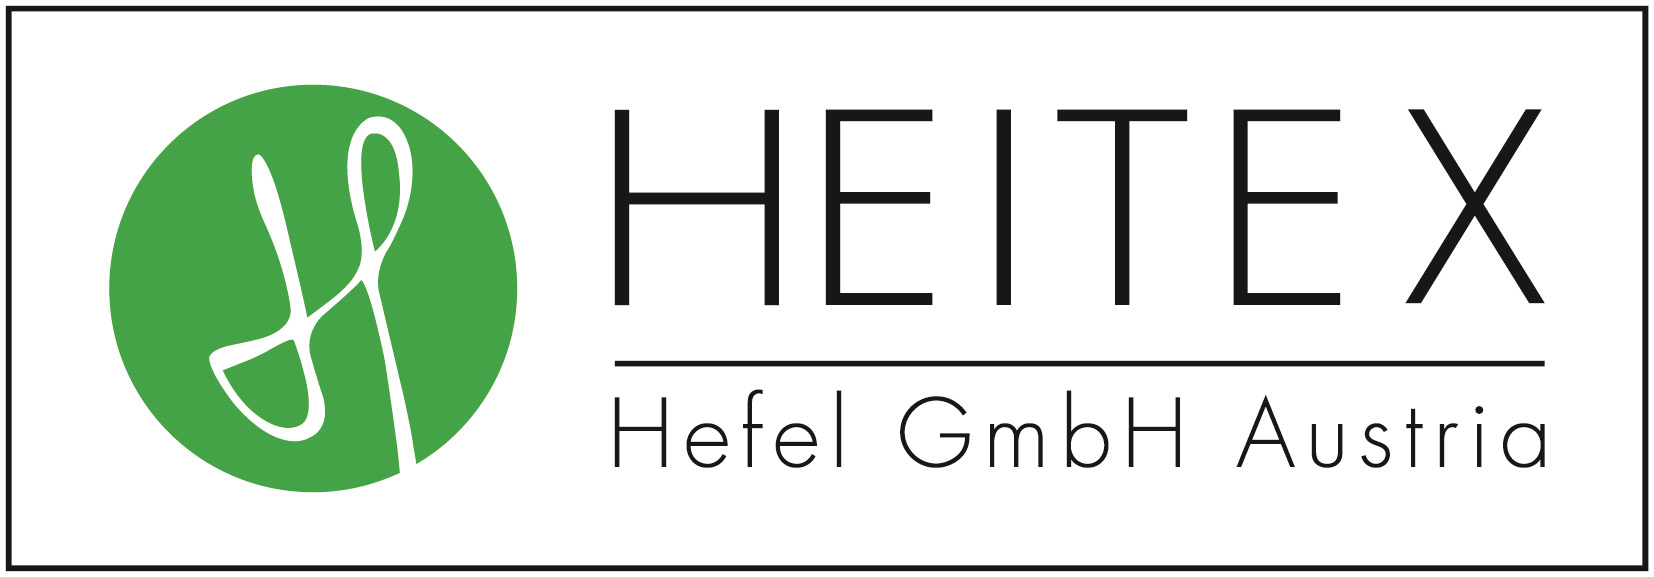 heitex_logo